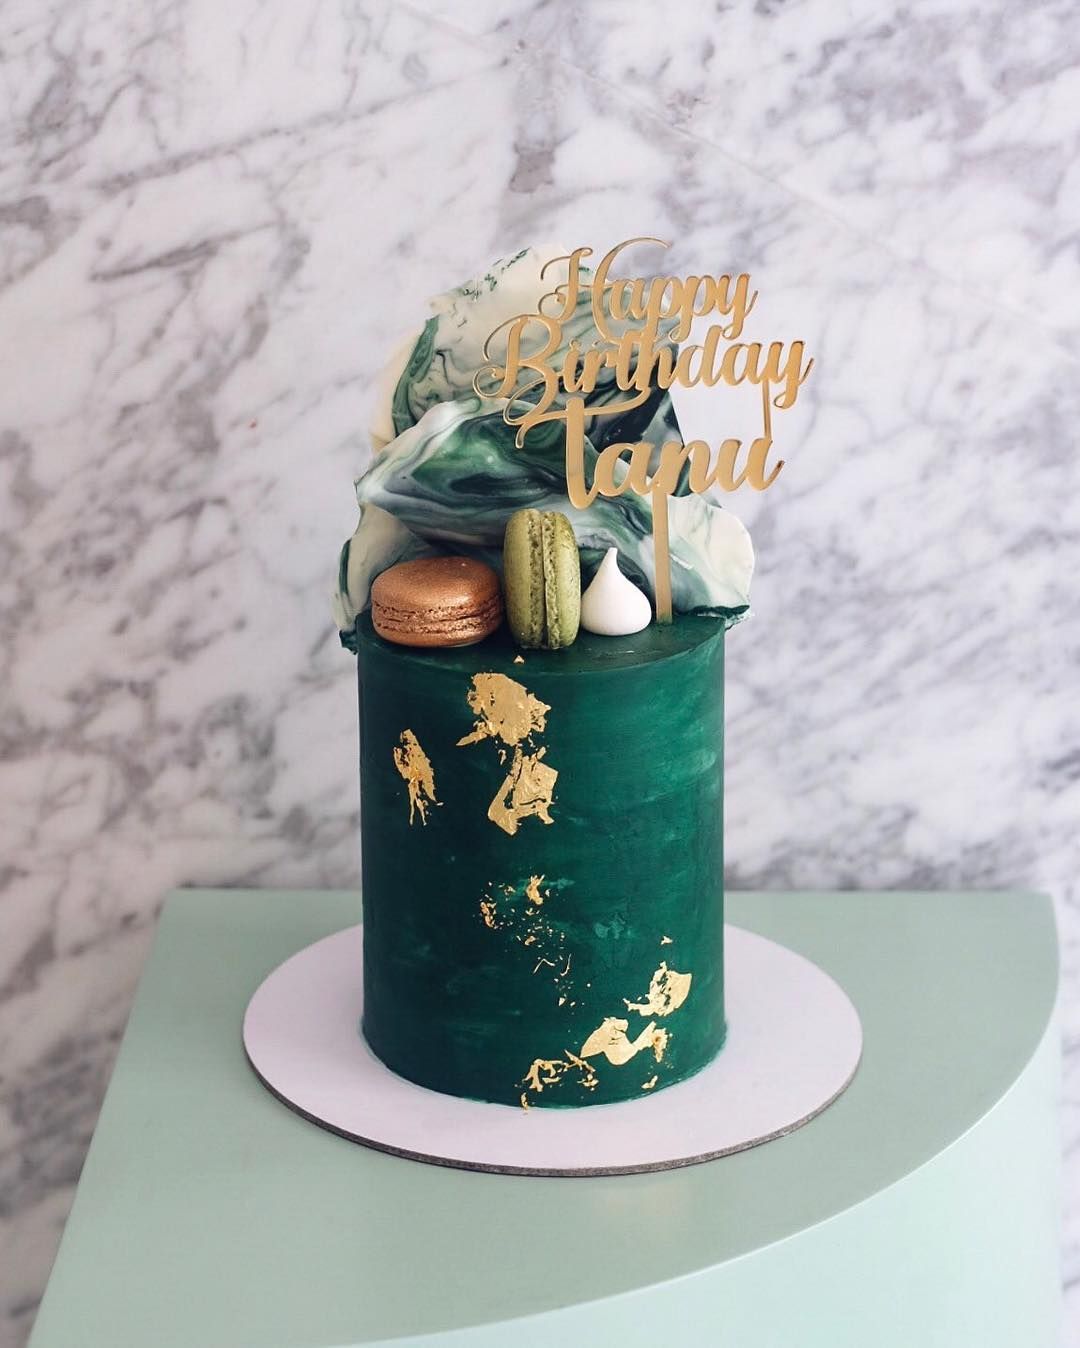  کیک تولد با تم سبز